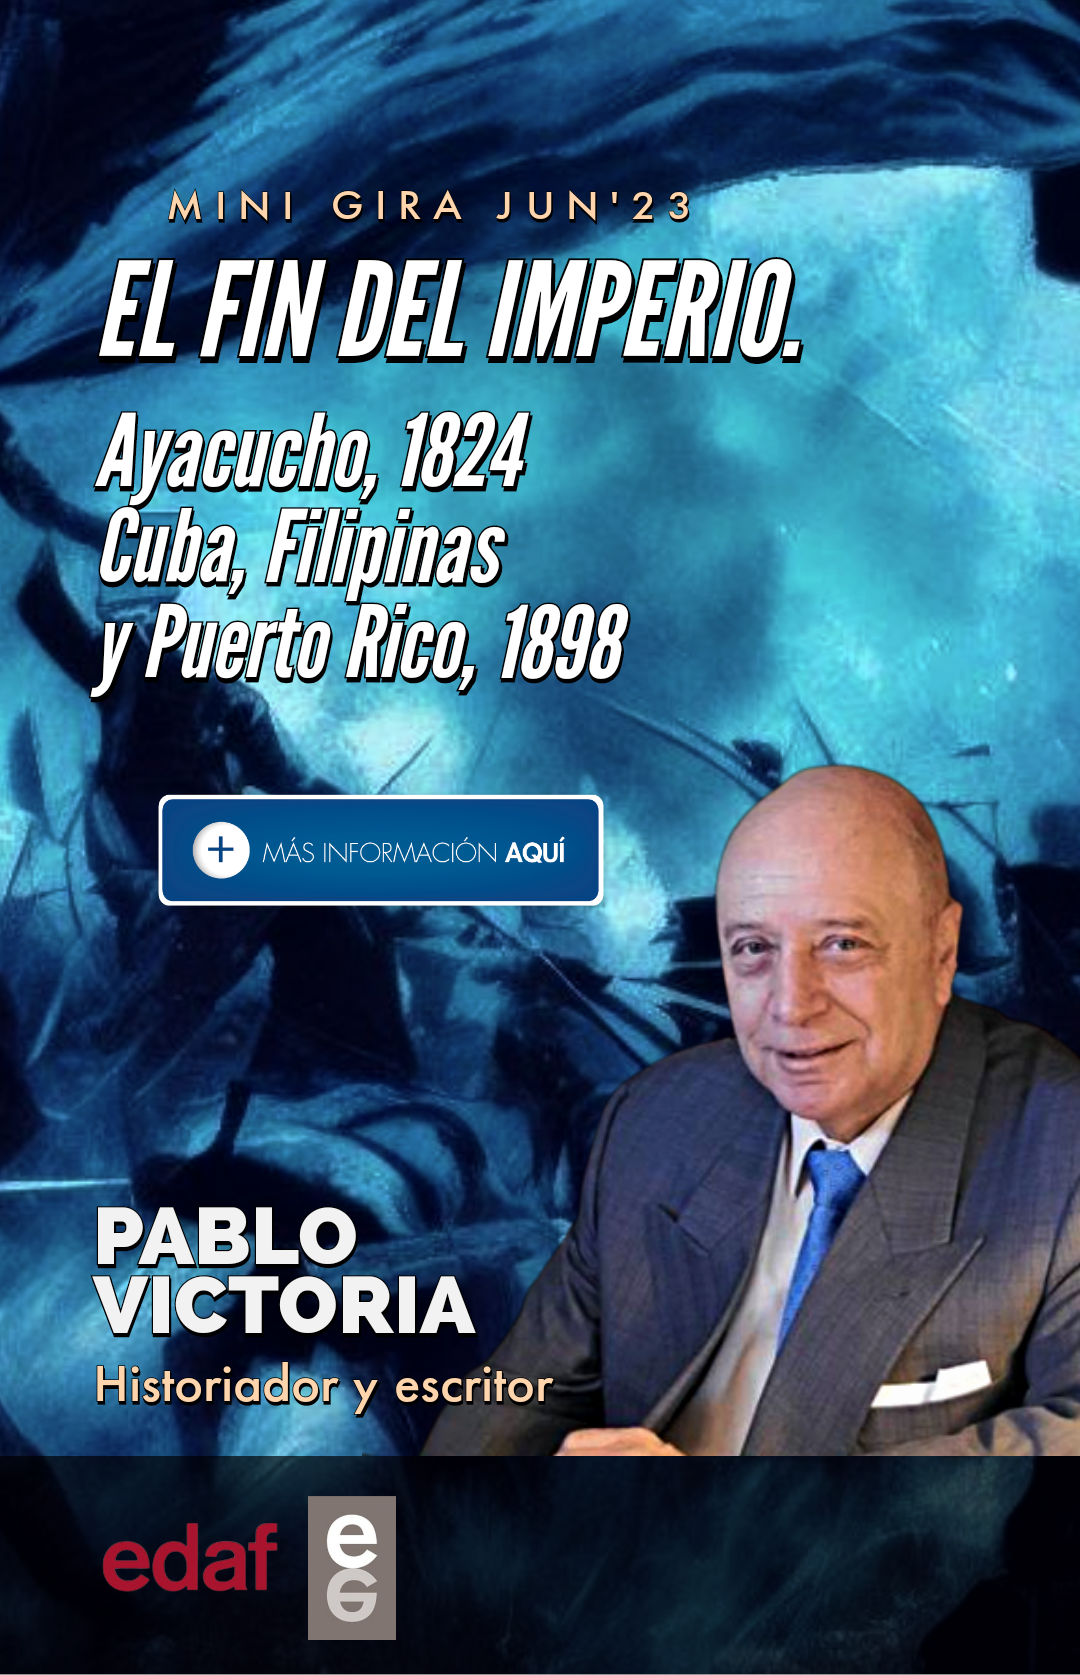 Pablo Victoria